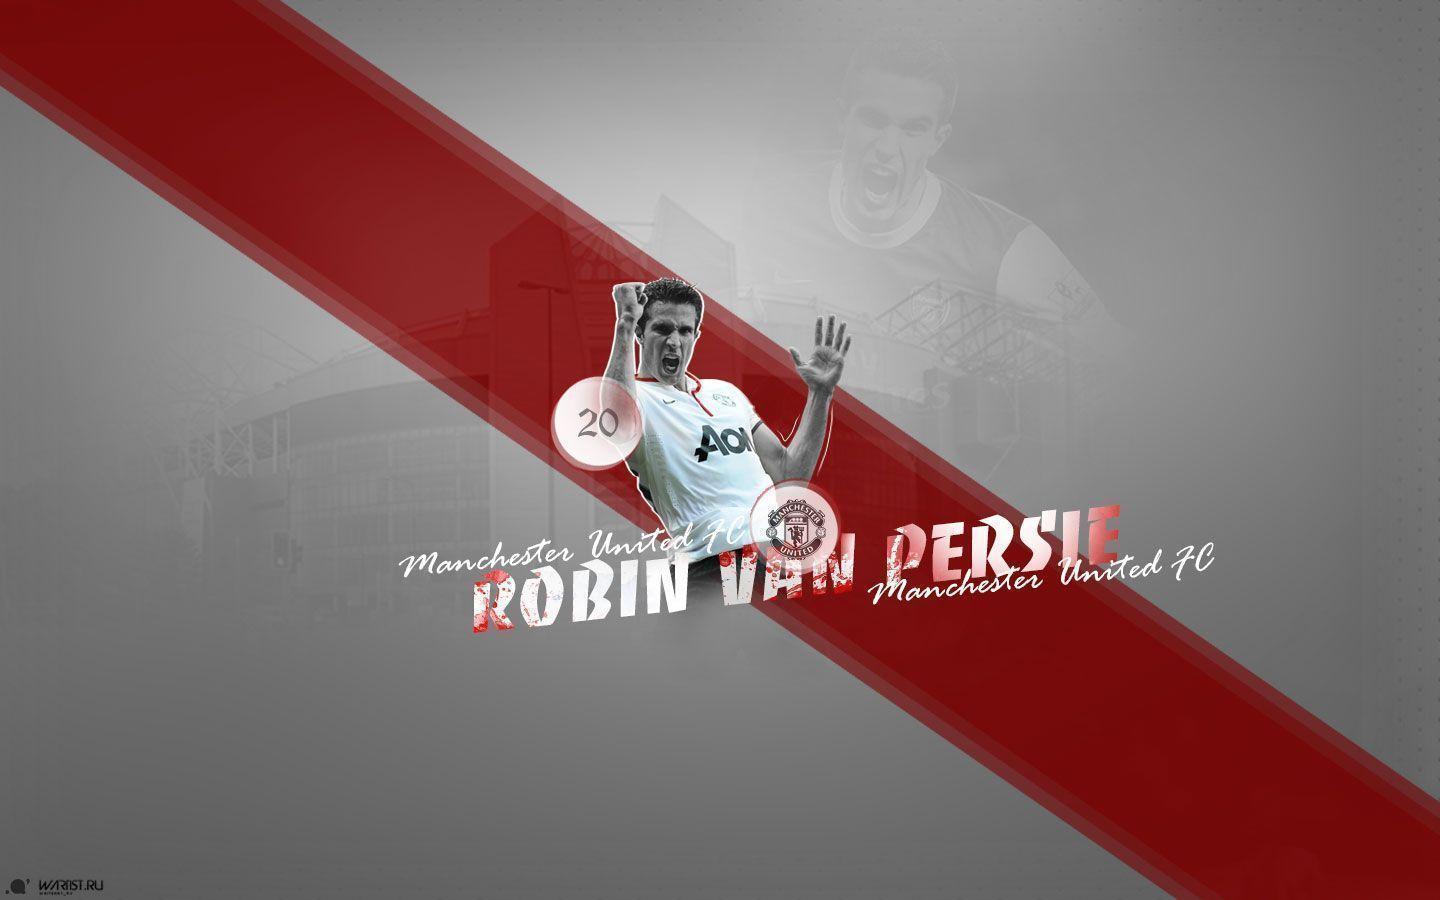 Robin Van Persie Manchester United Wallpaper. High Definition